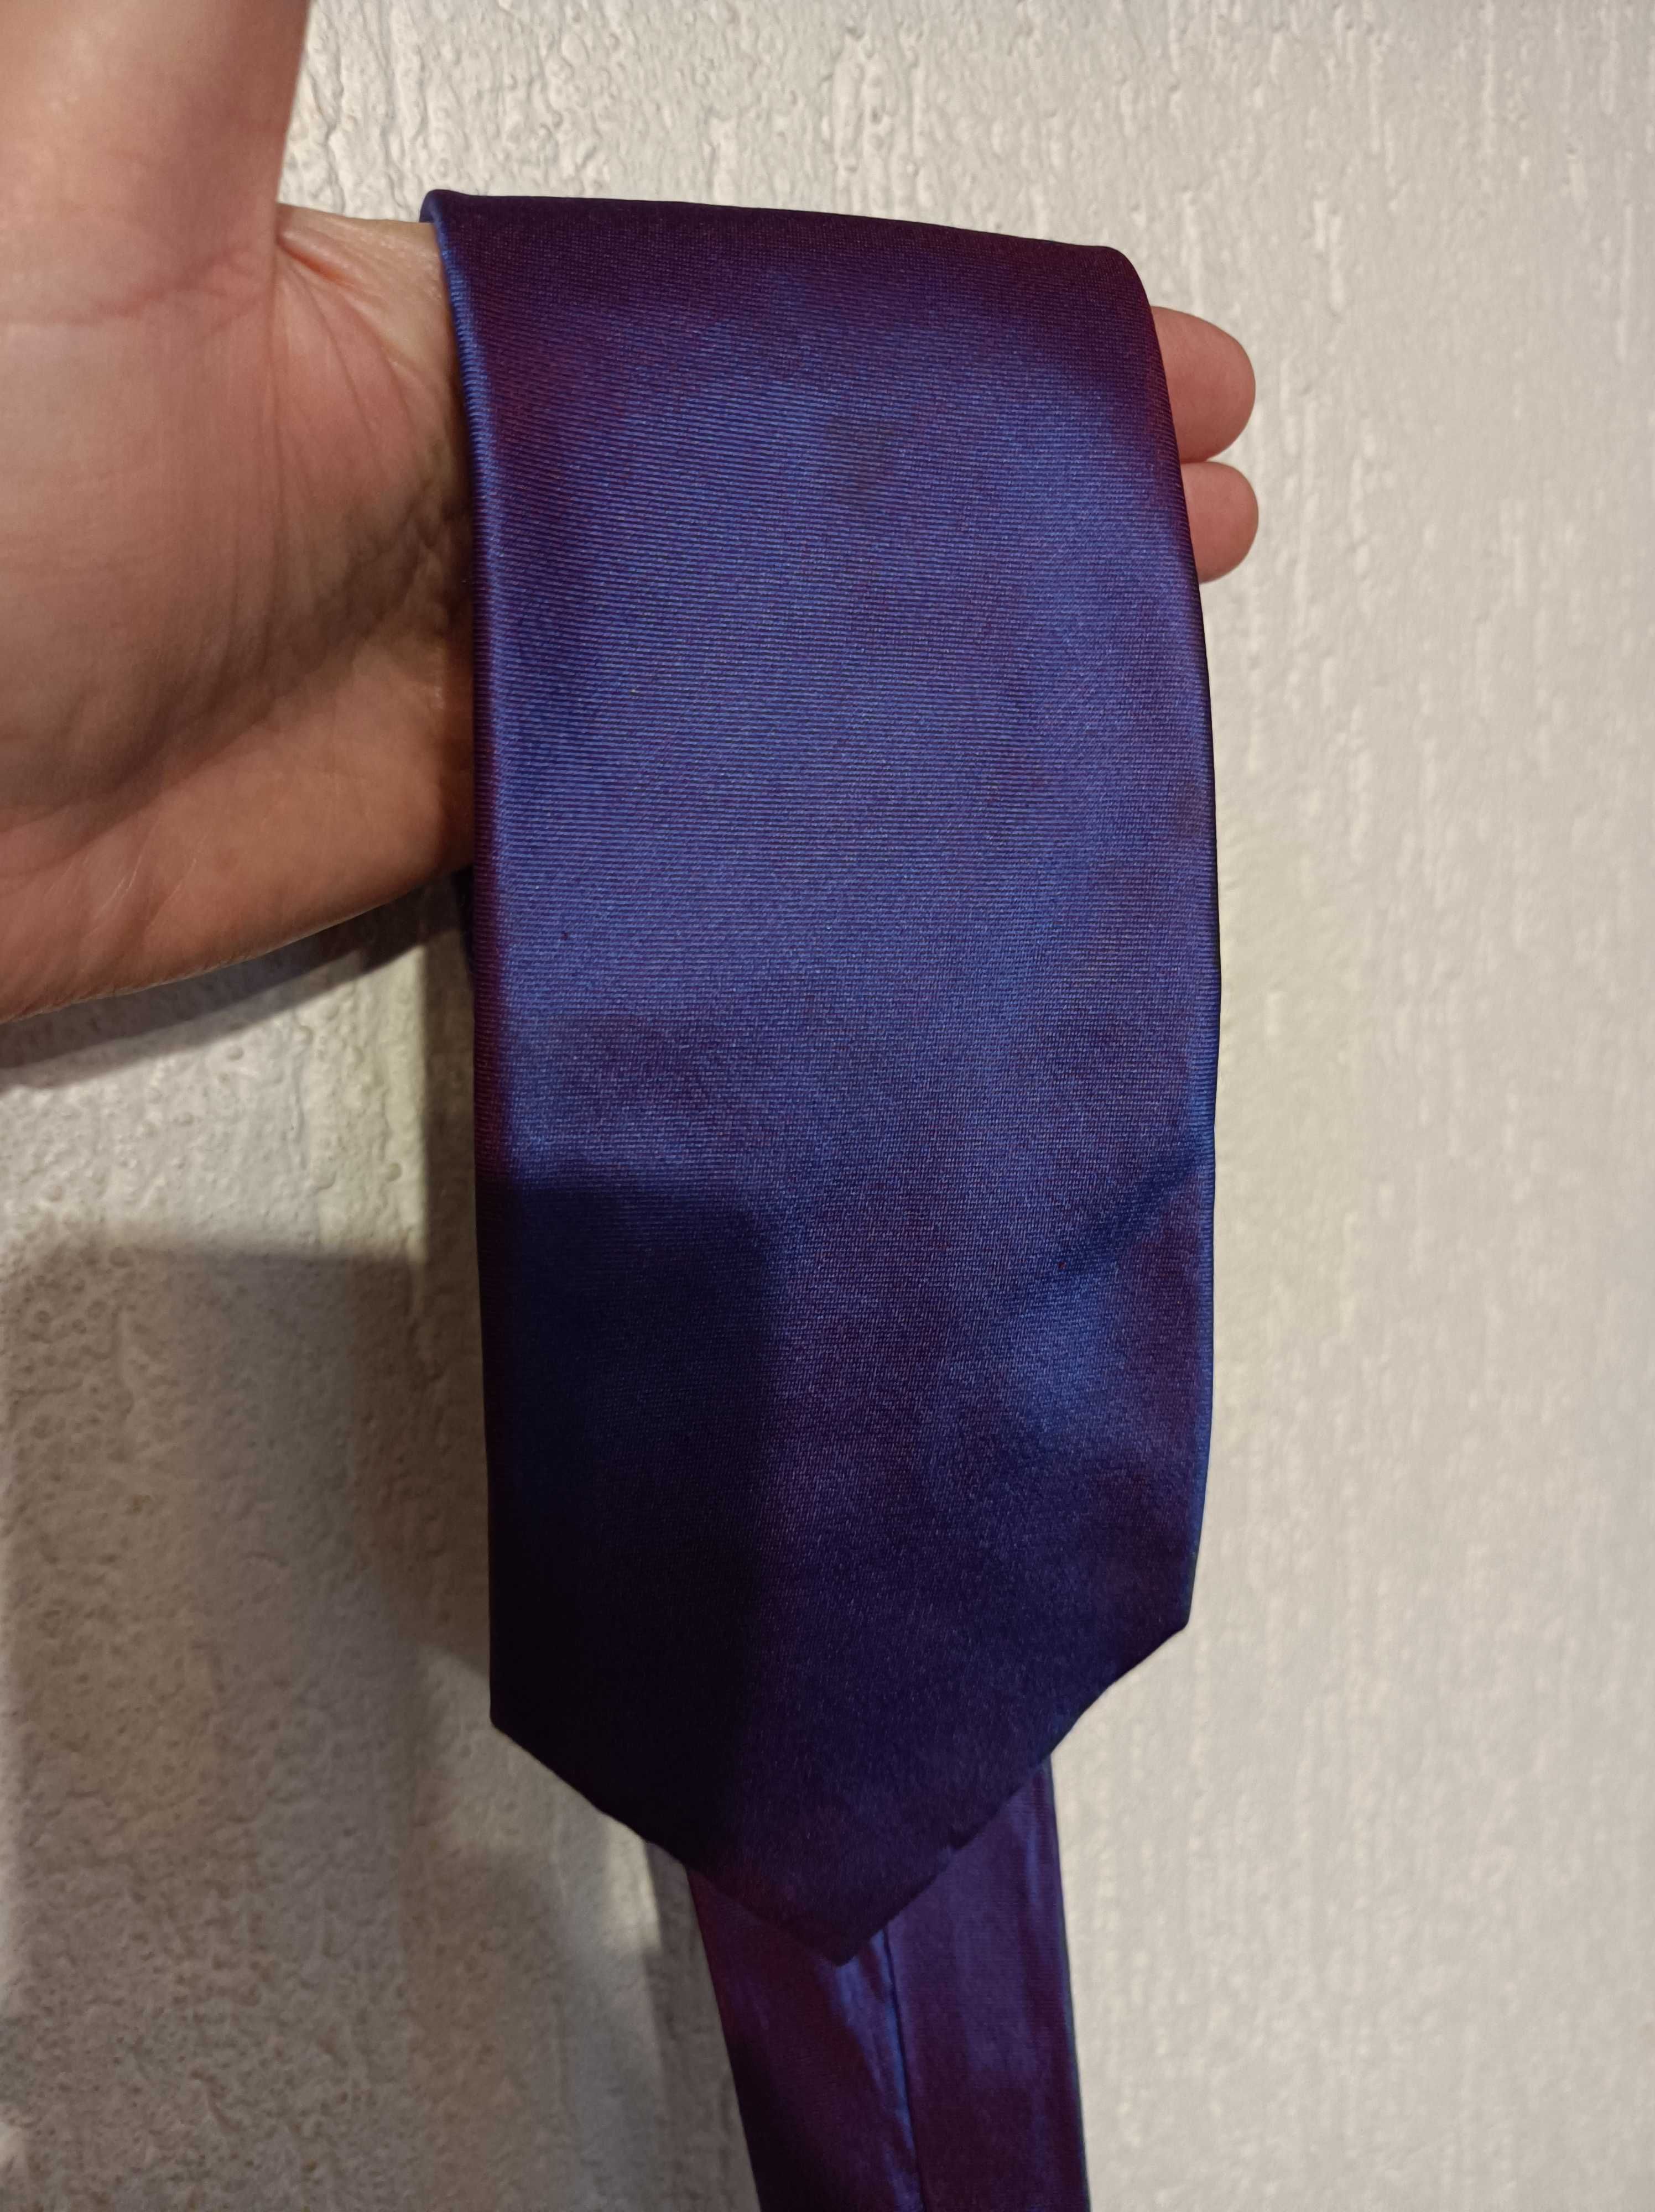 Jedwabny krawat "Tie Rack"